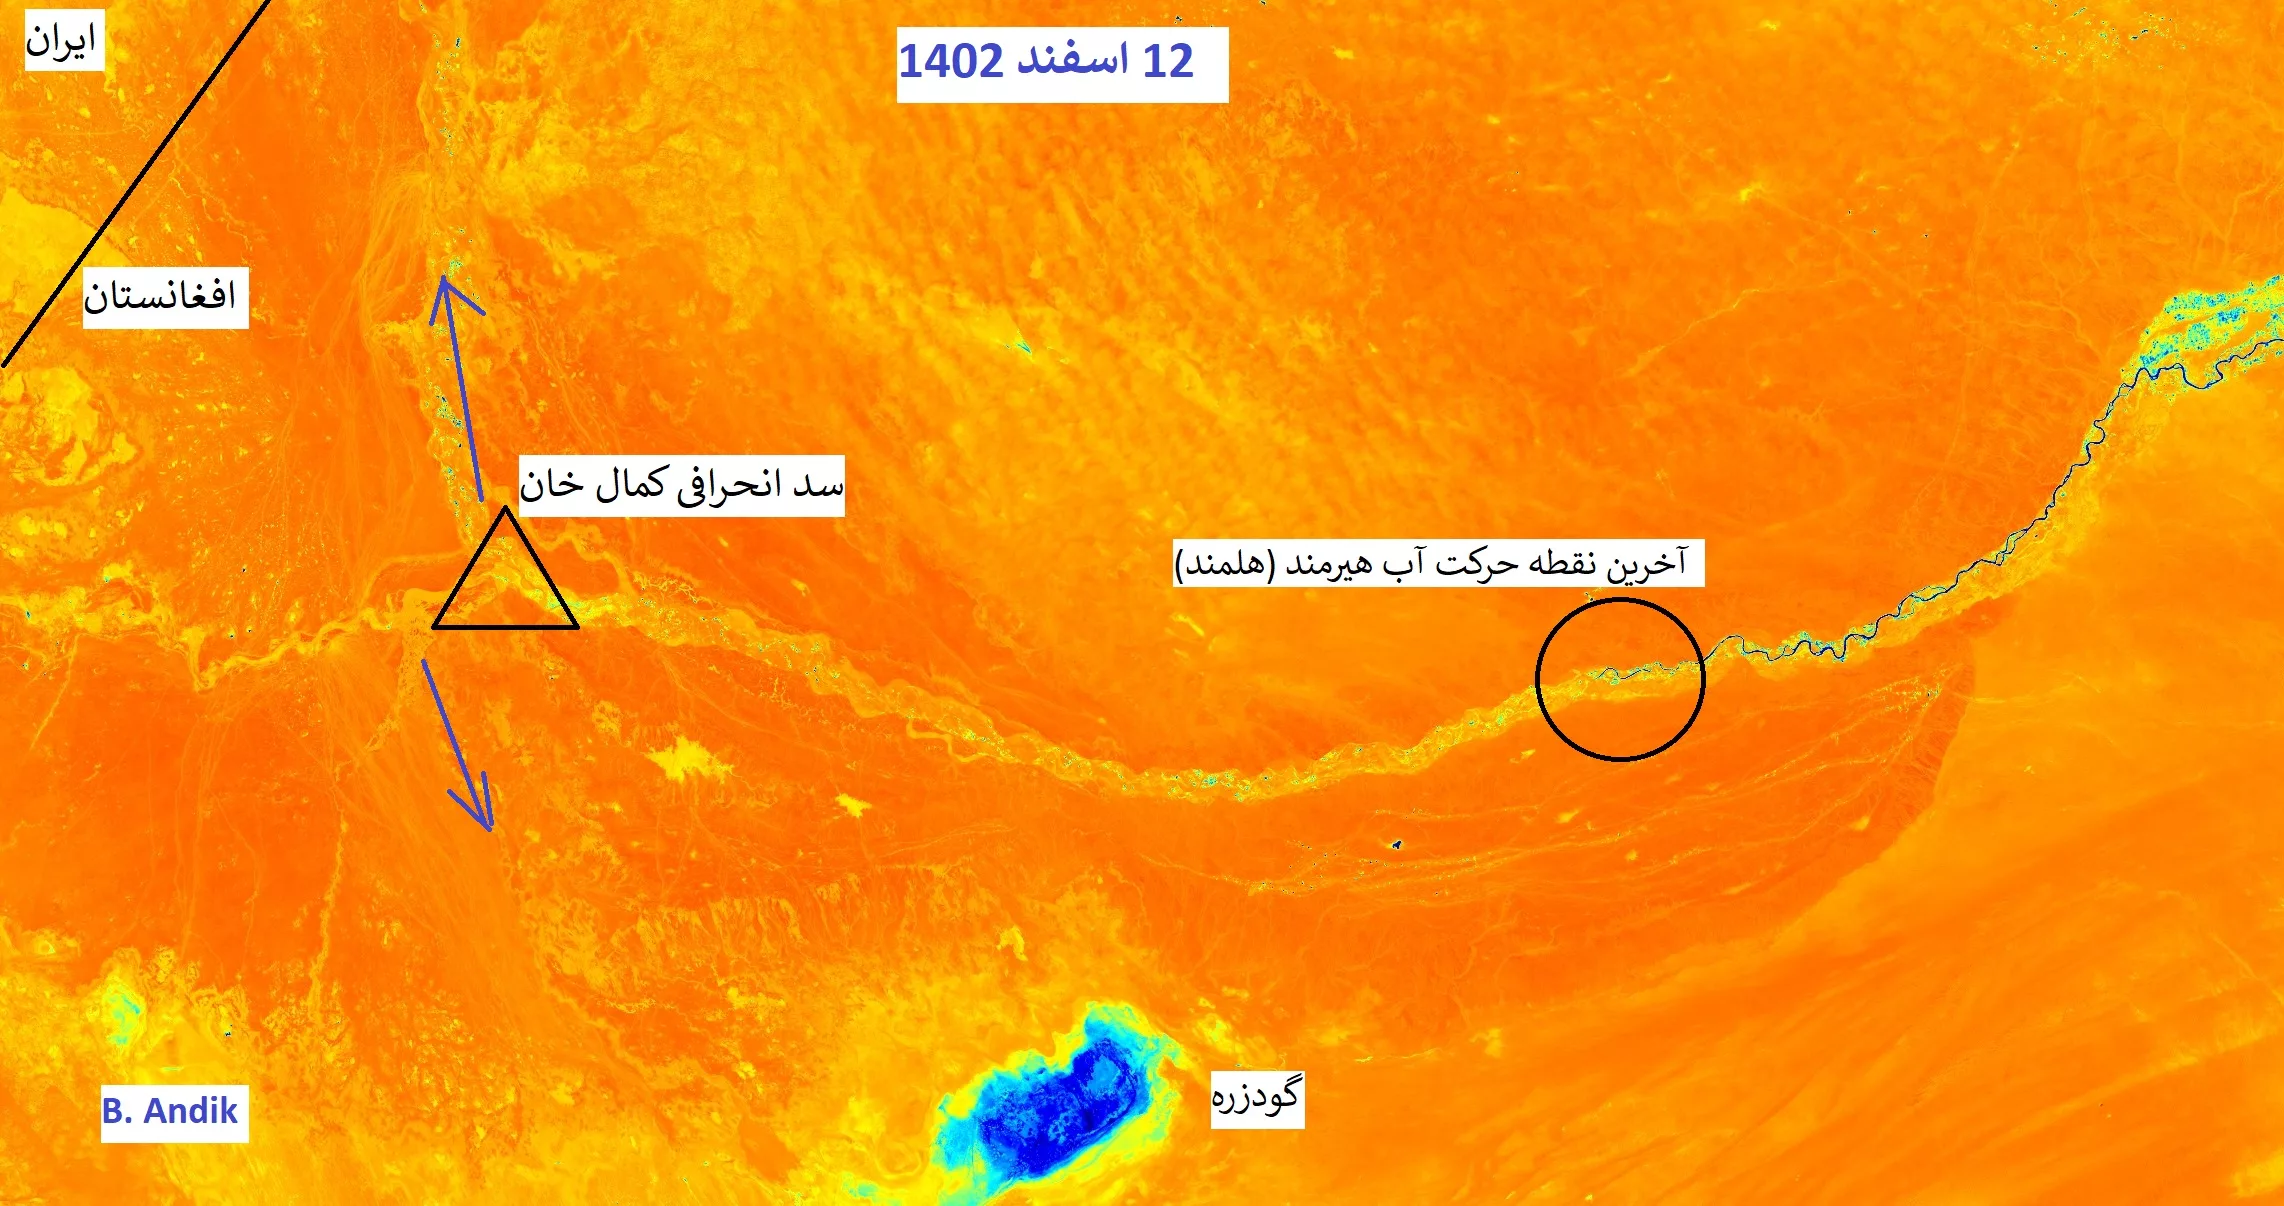 تصاویر ماهواره «شاخص رطوبت» (moisture index) افغانستان. نقاط تیره‌رنگ وجود آب را نشان می‌دهند